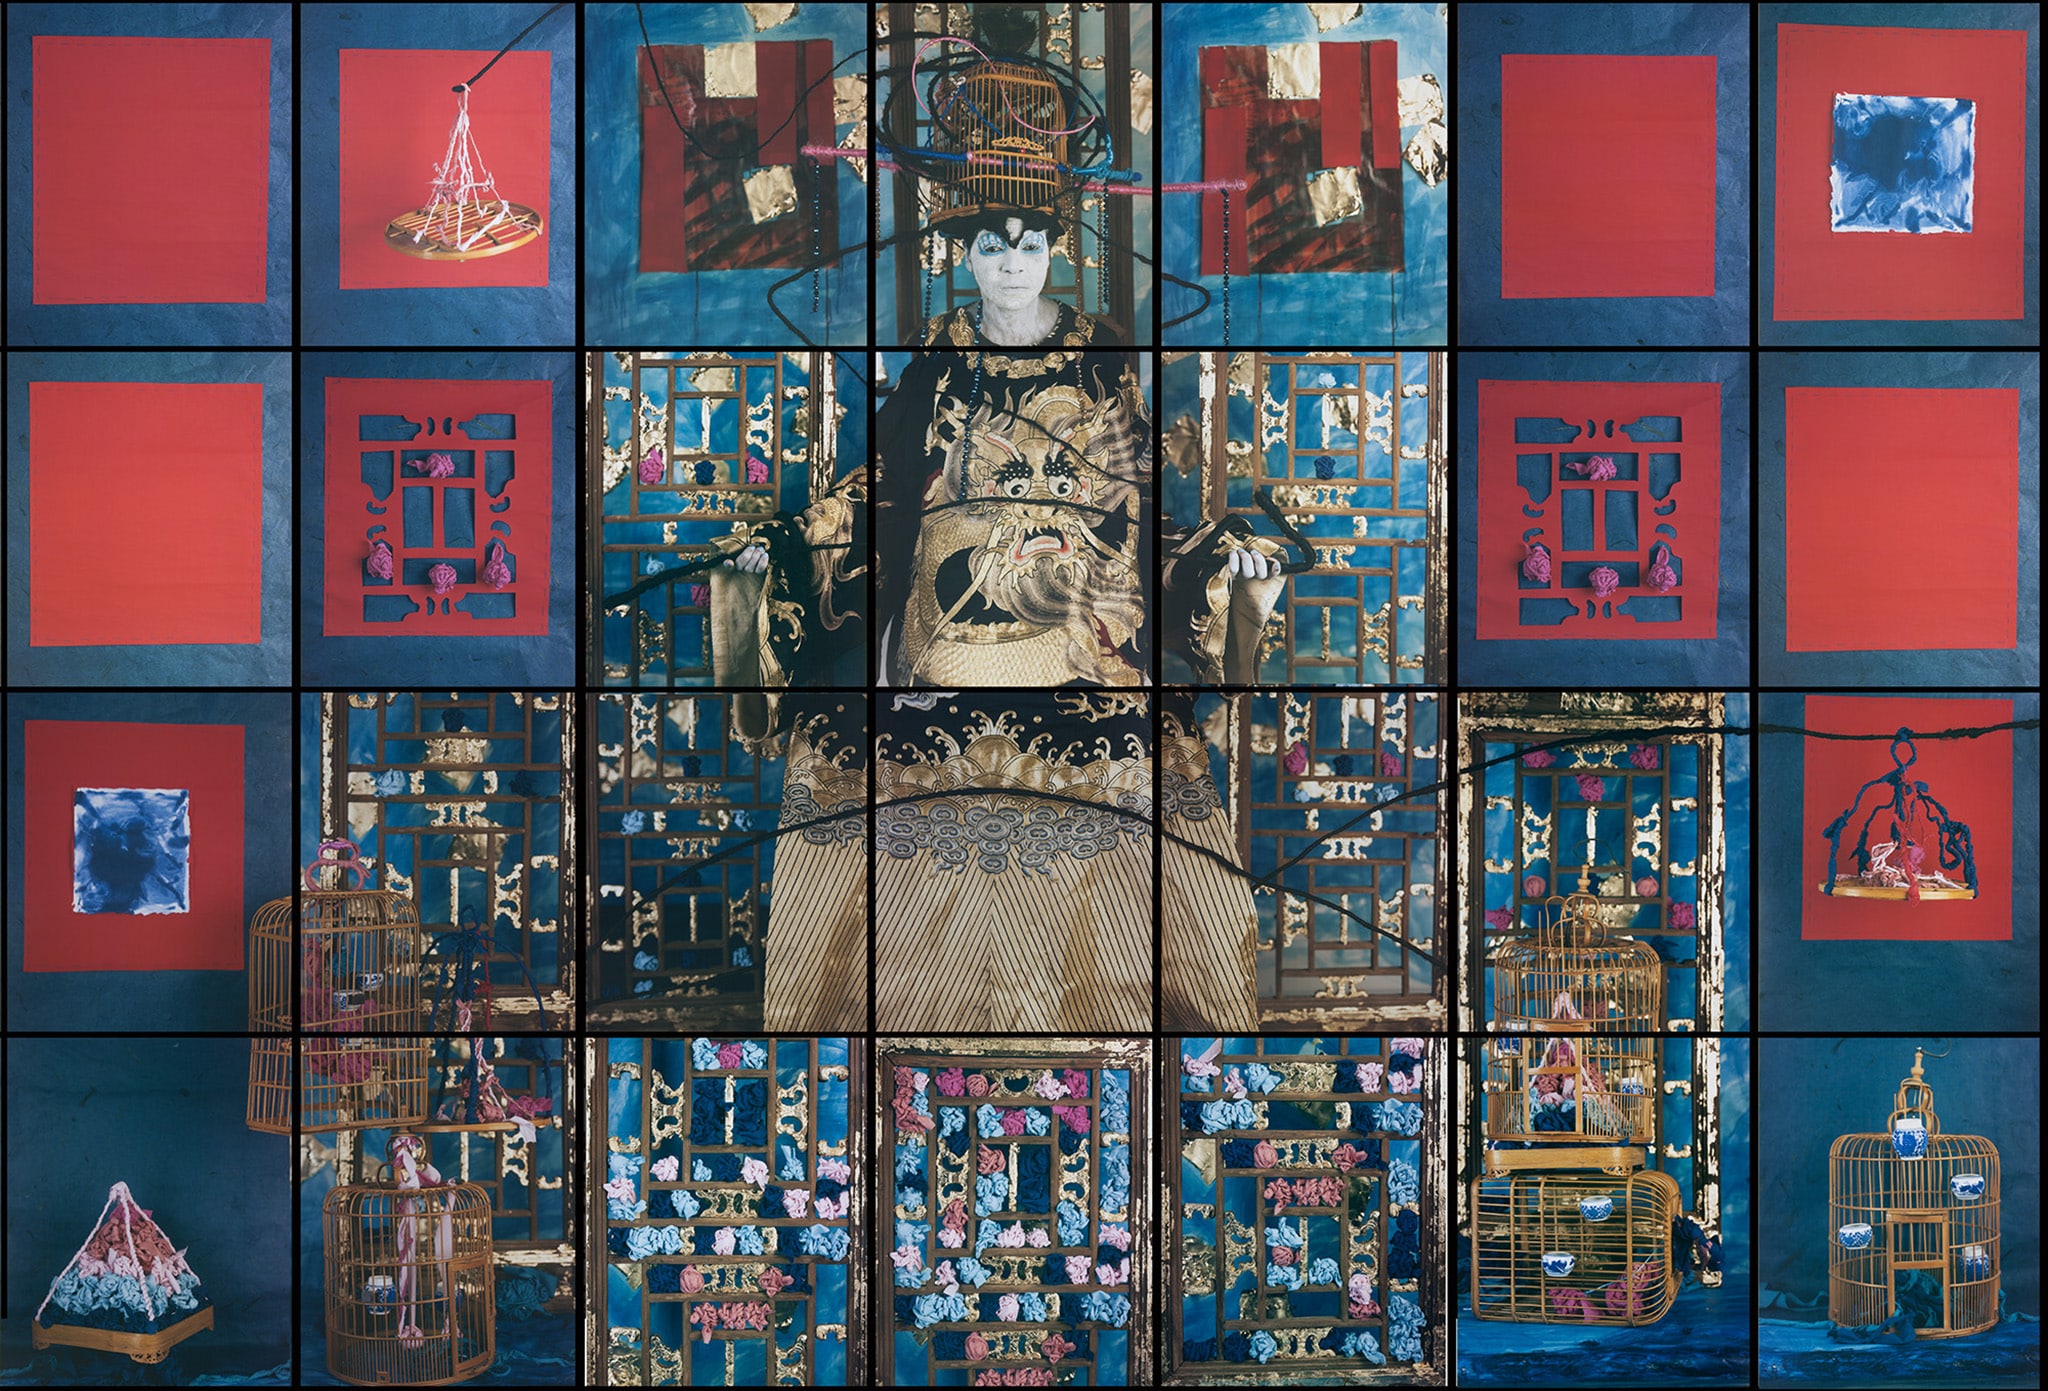 Maria Magdalena Campos-pons, "Finding Balance". Composizione di 28 pannelli, 22 x 26 cm ognuno + polaroids 20 x 24 cm. 